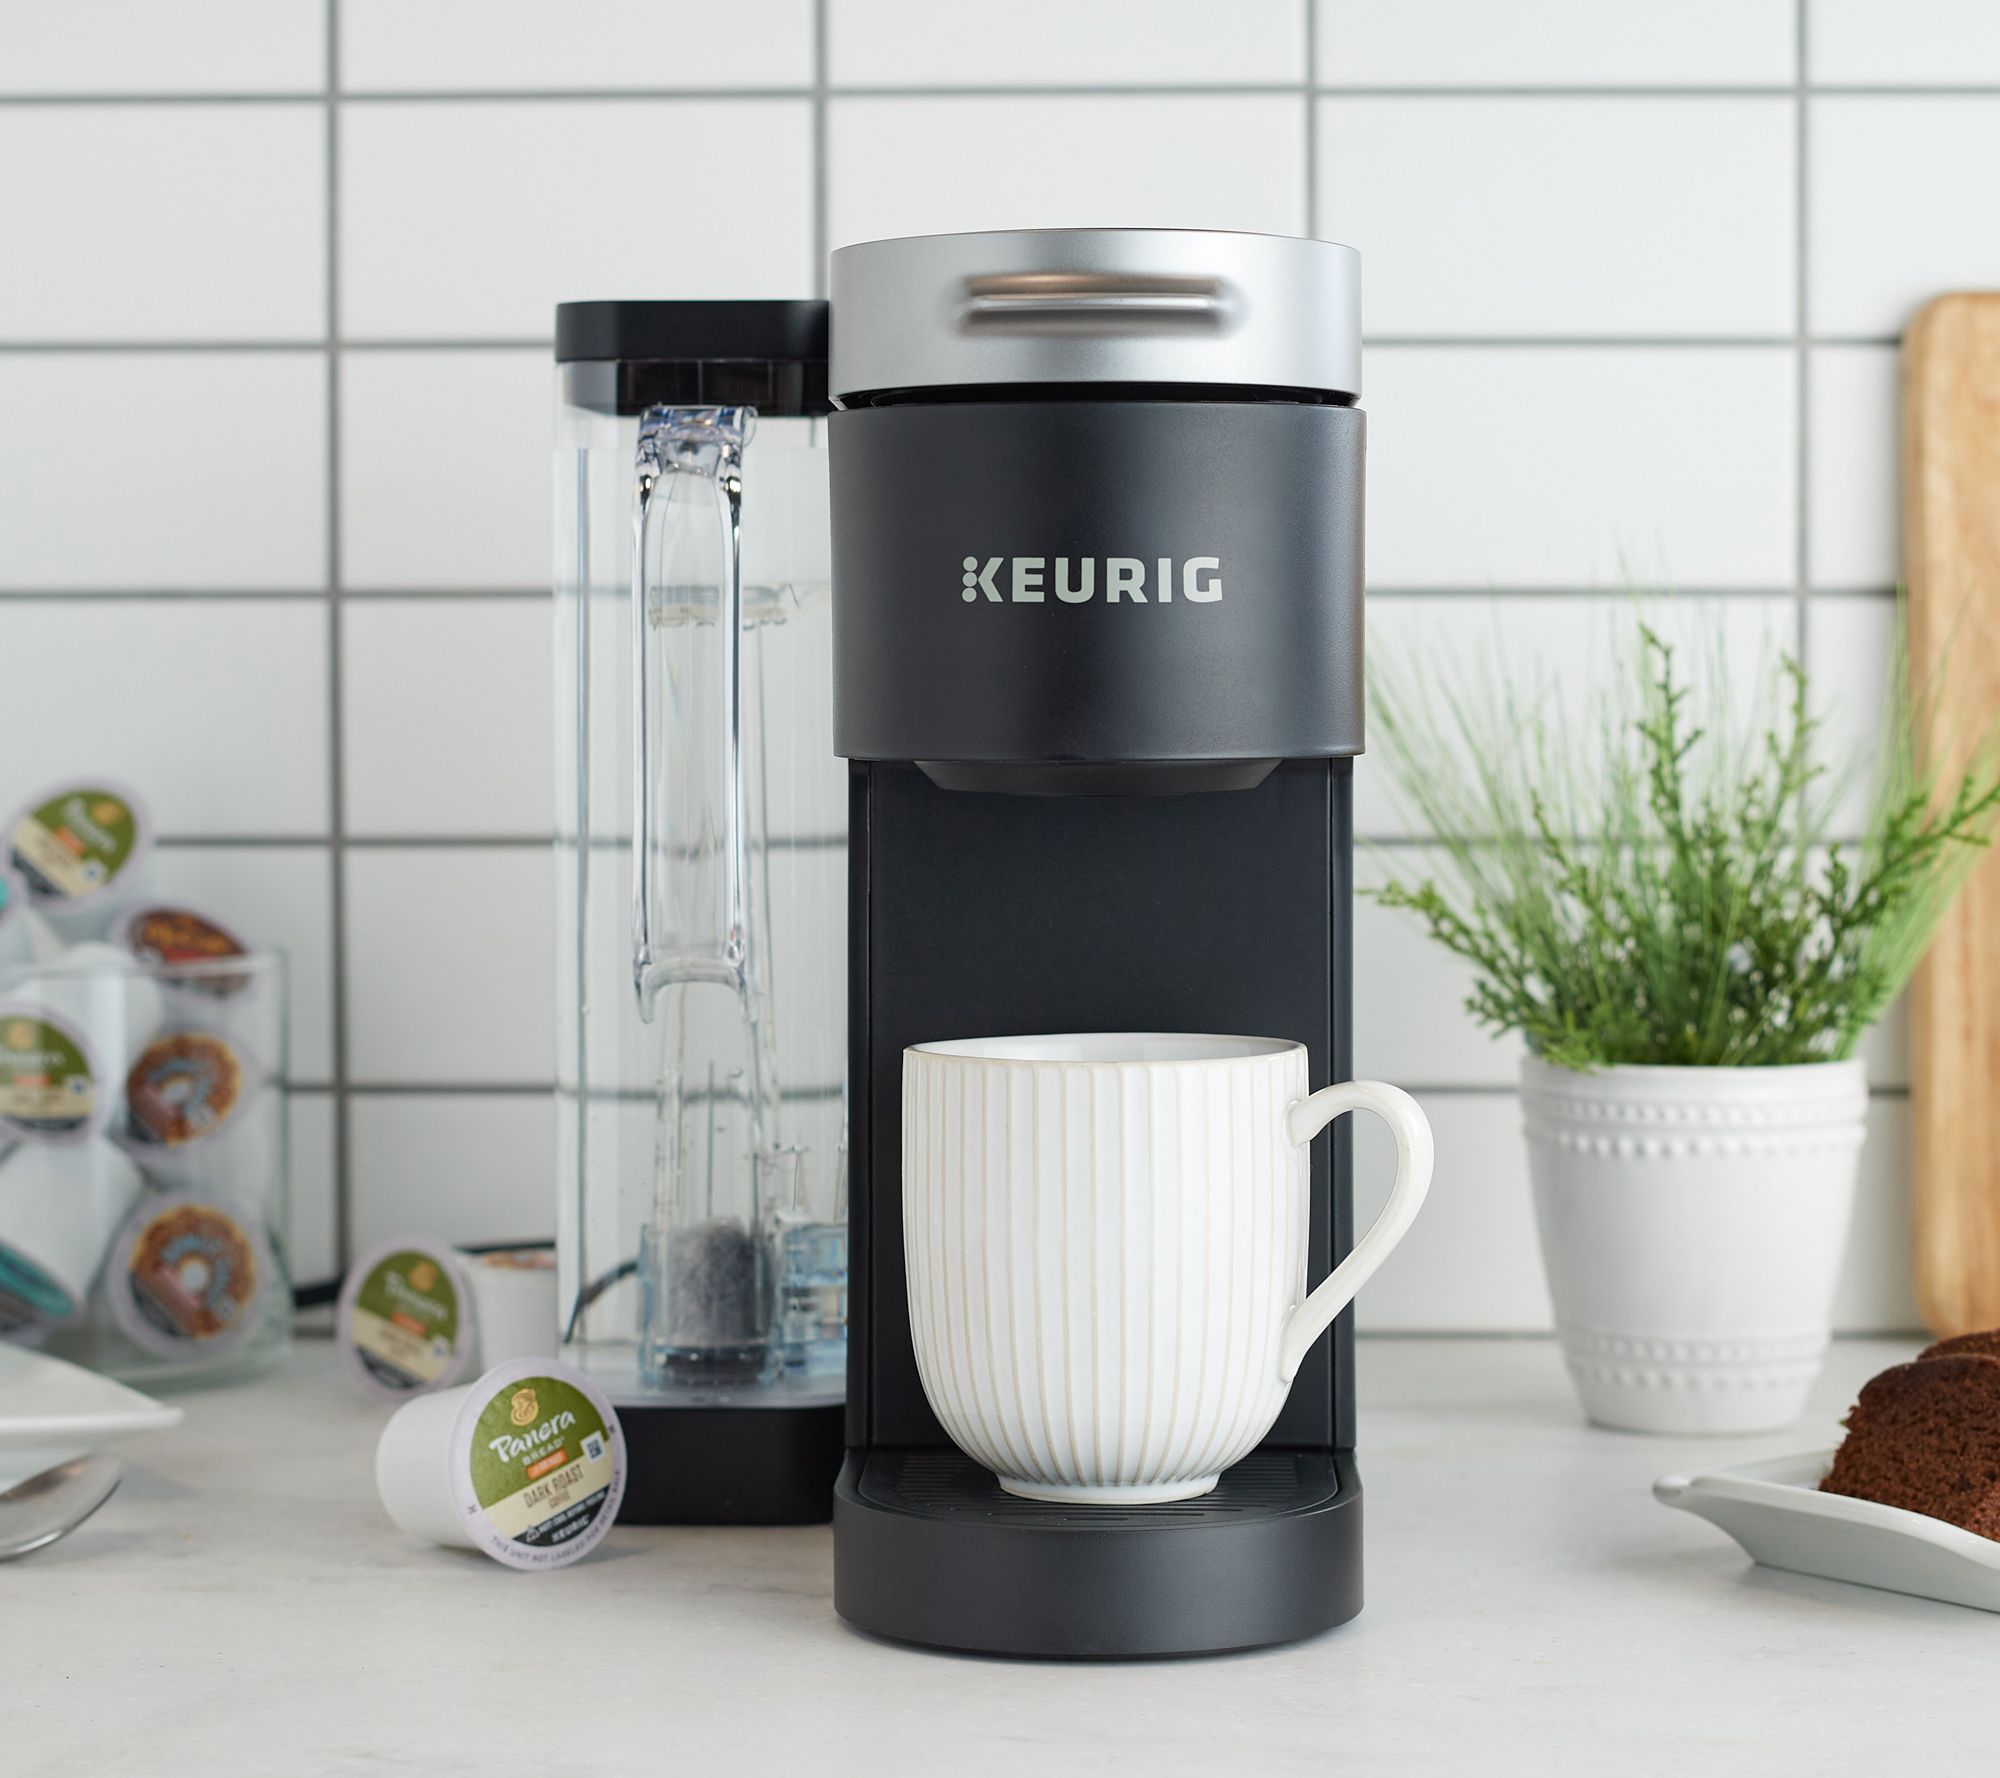 SHWK 10/25 Keurig K-Supreme Coffee Maker w/ 60 K-Cups 